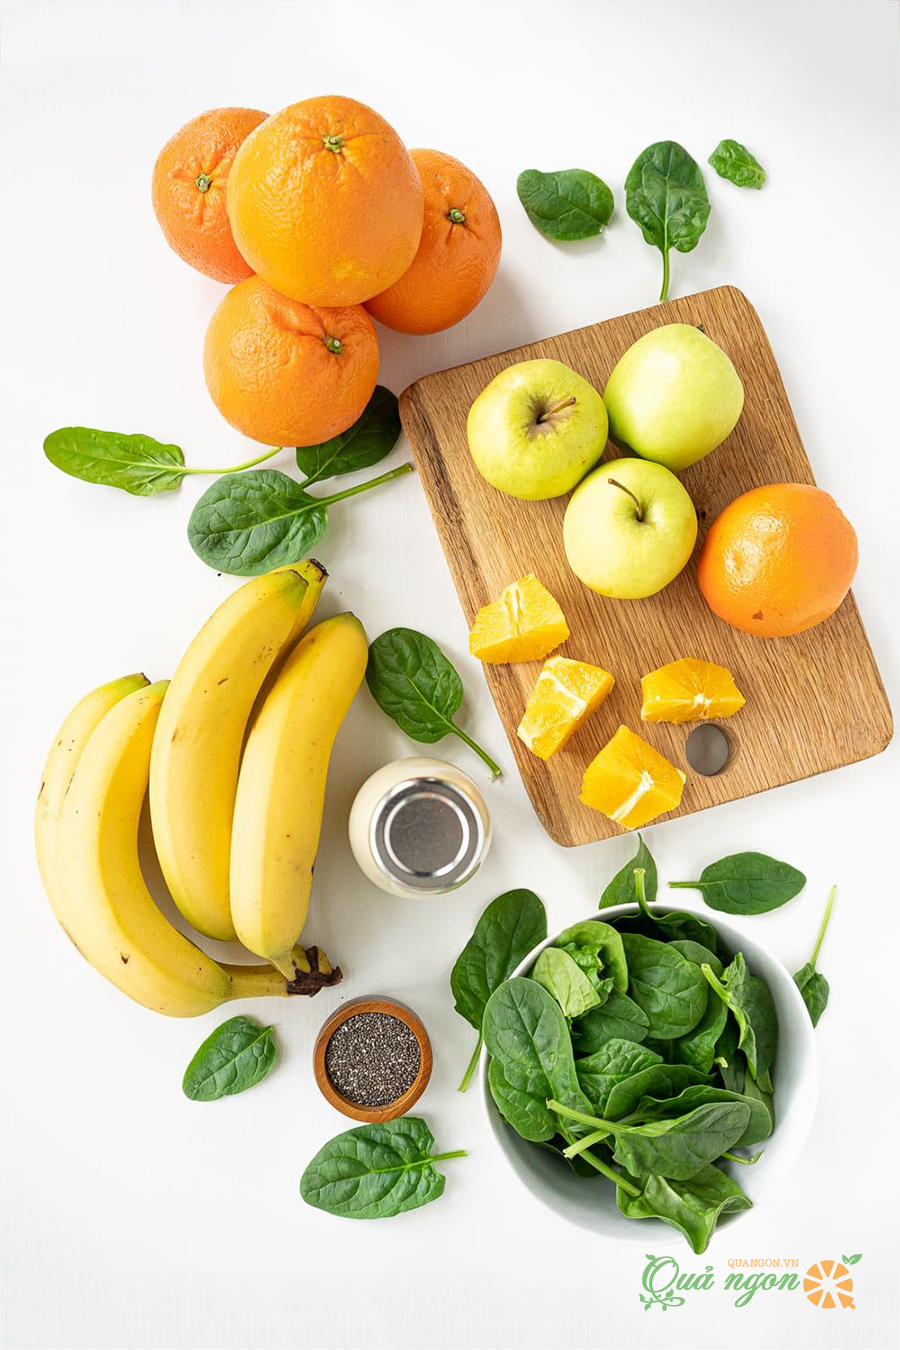 Chuẩn bị nguyên liệu gồm trái cây và rau xanh để làm sinh tố